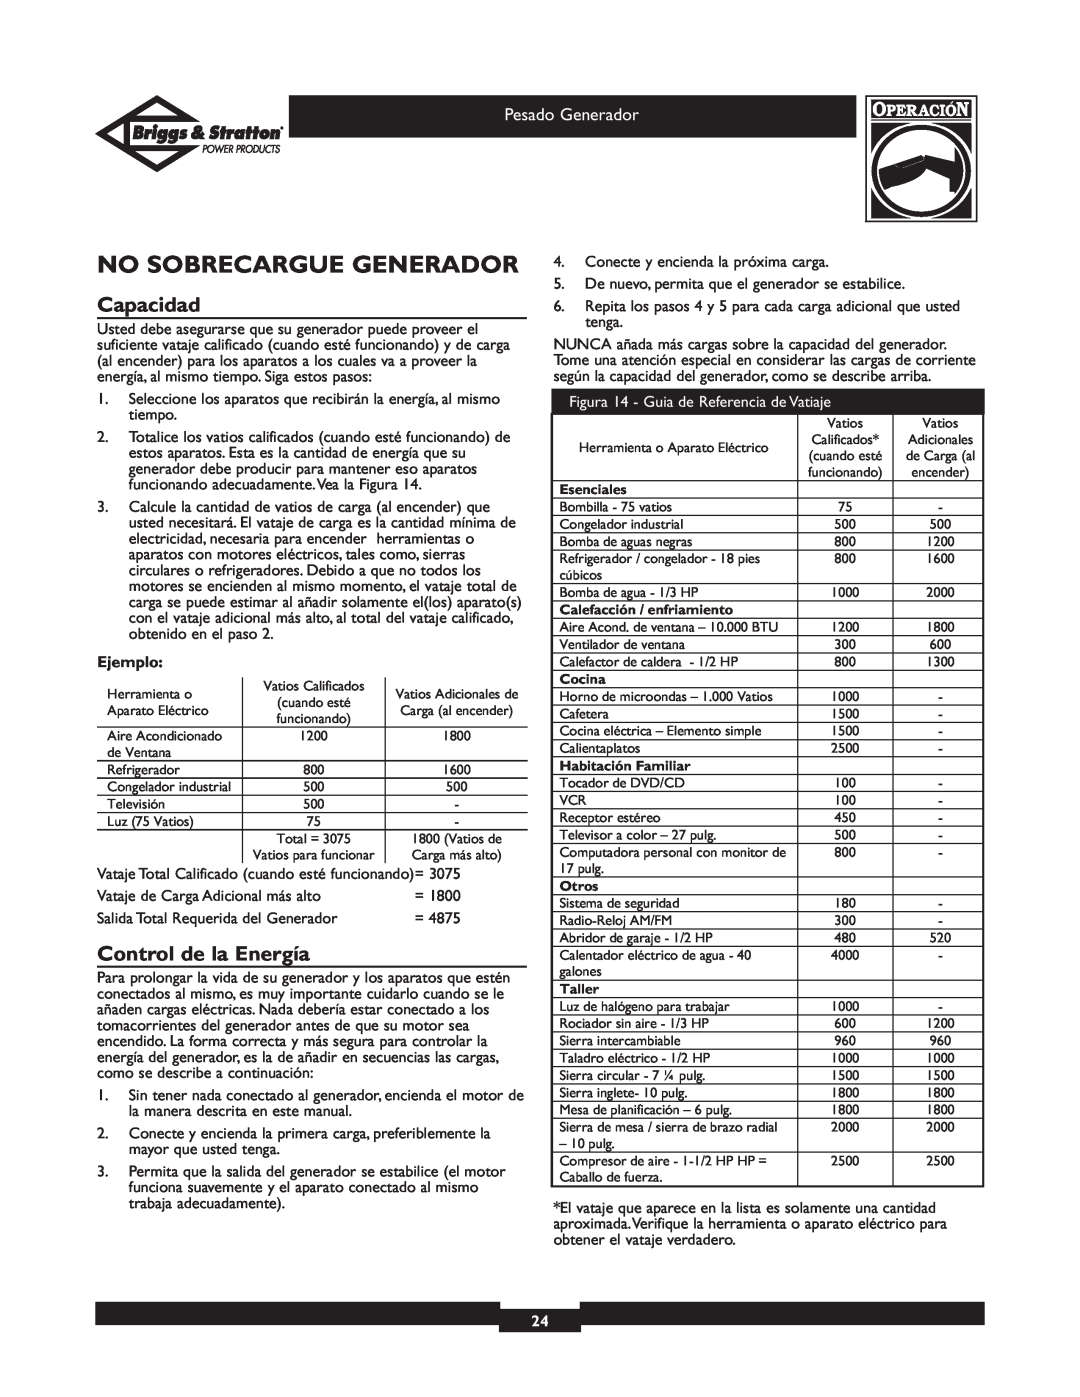 Briggs & Stratton 30204 owner manual No Sobrecargue Generador, Capacidad, Control de la Energía, Ejemplo 